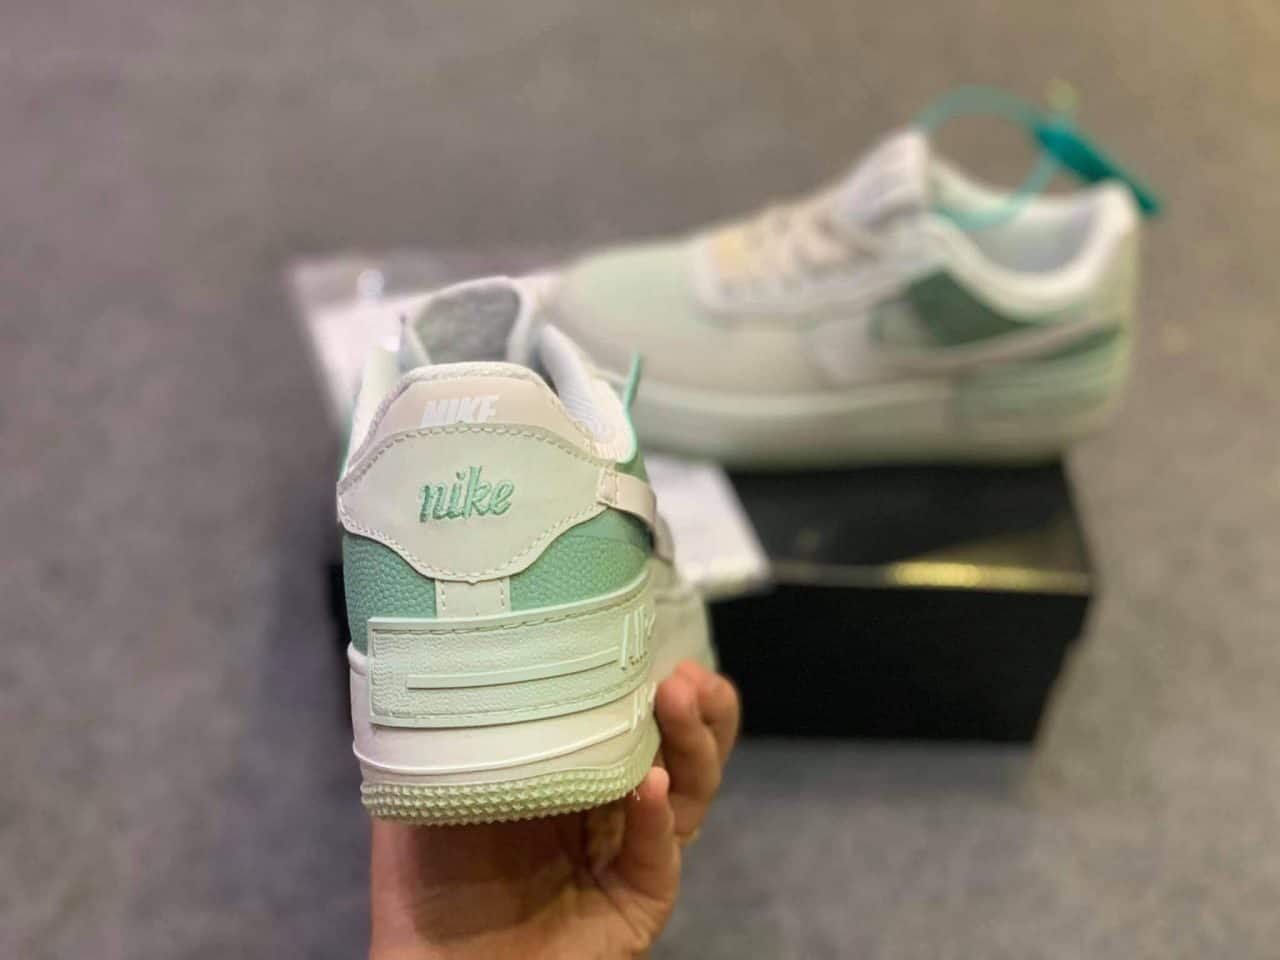 Giày Bata Nike Air Force 1 Xanh Lá mang lại xu hướng thời trang mới độc đáo